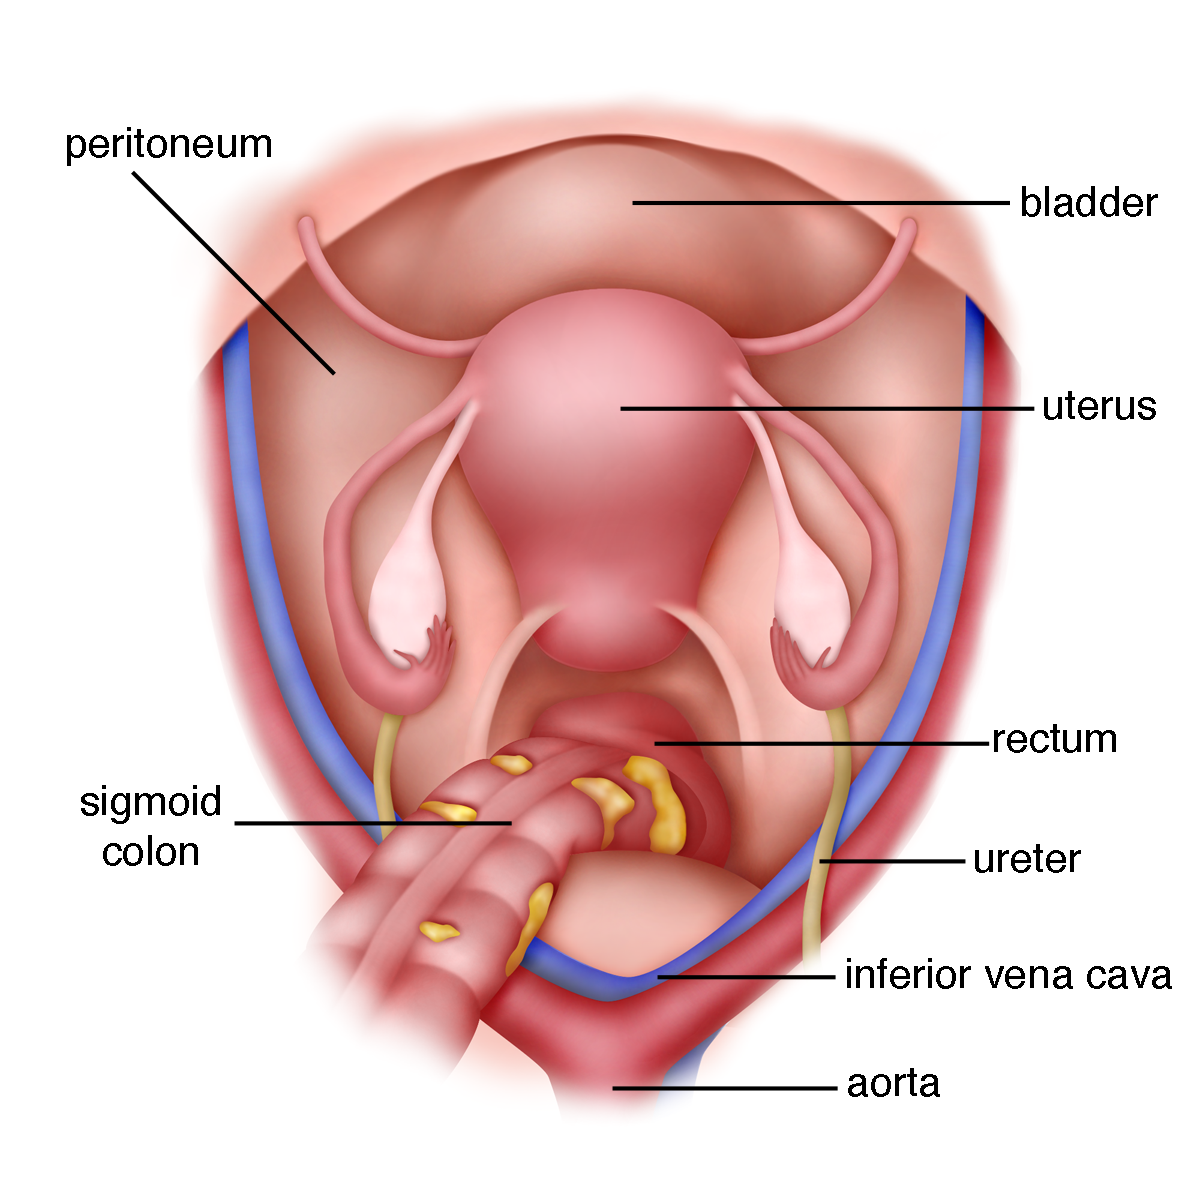 isthmus of uterus